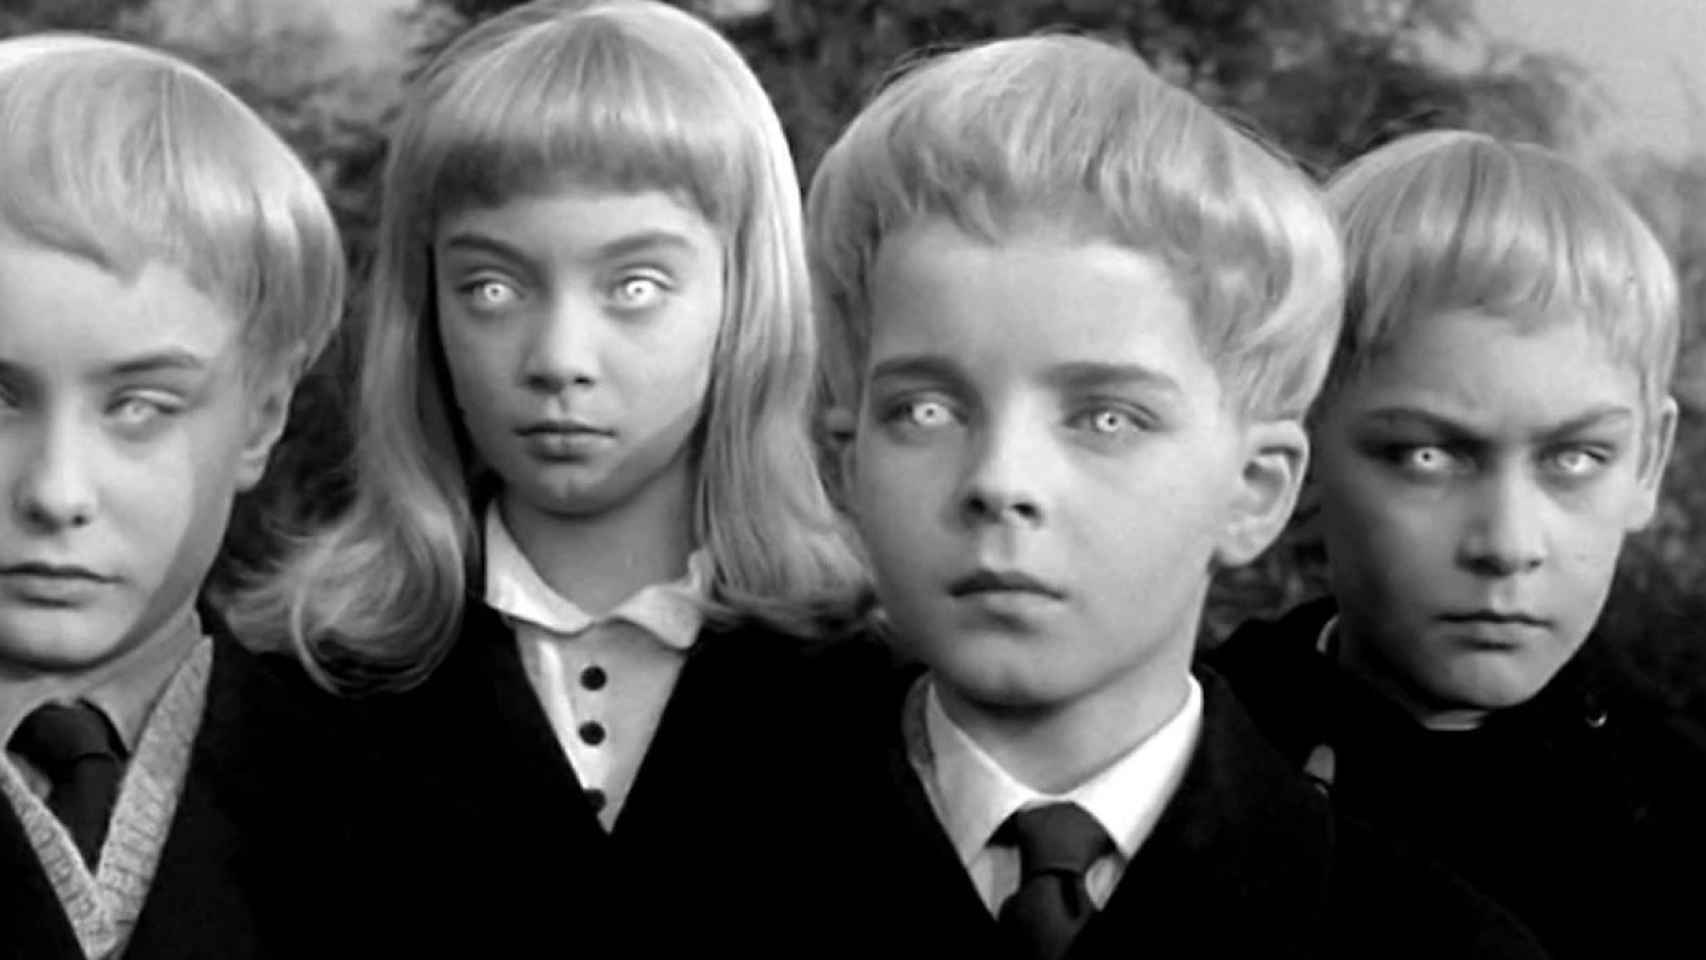 Los niños alienados, no, alienígenas de 'El pueblo de los malditos' (1960), según novela de John Wyndham